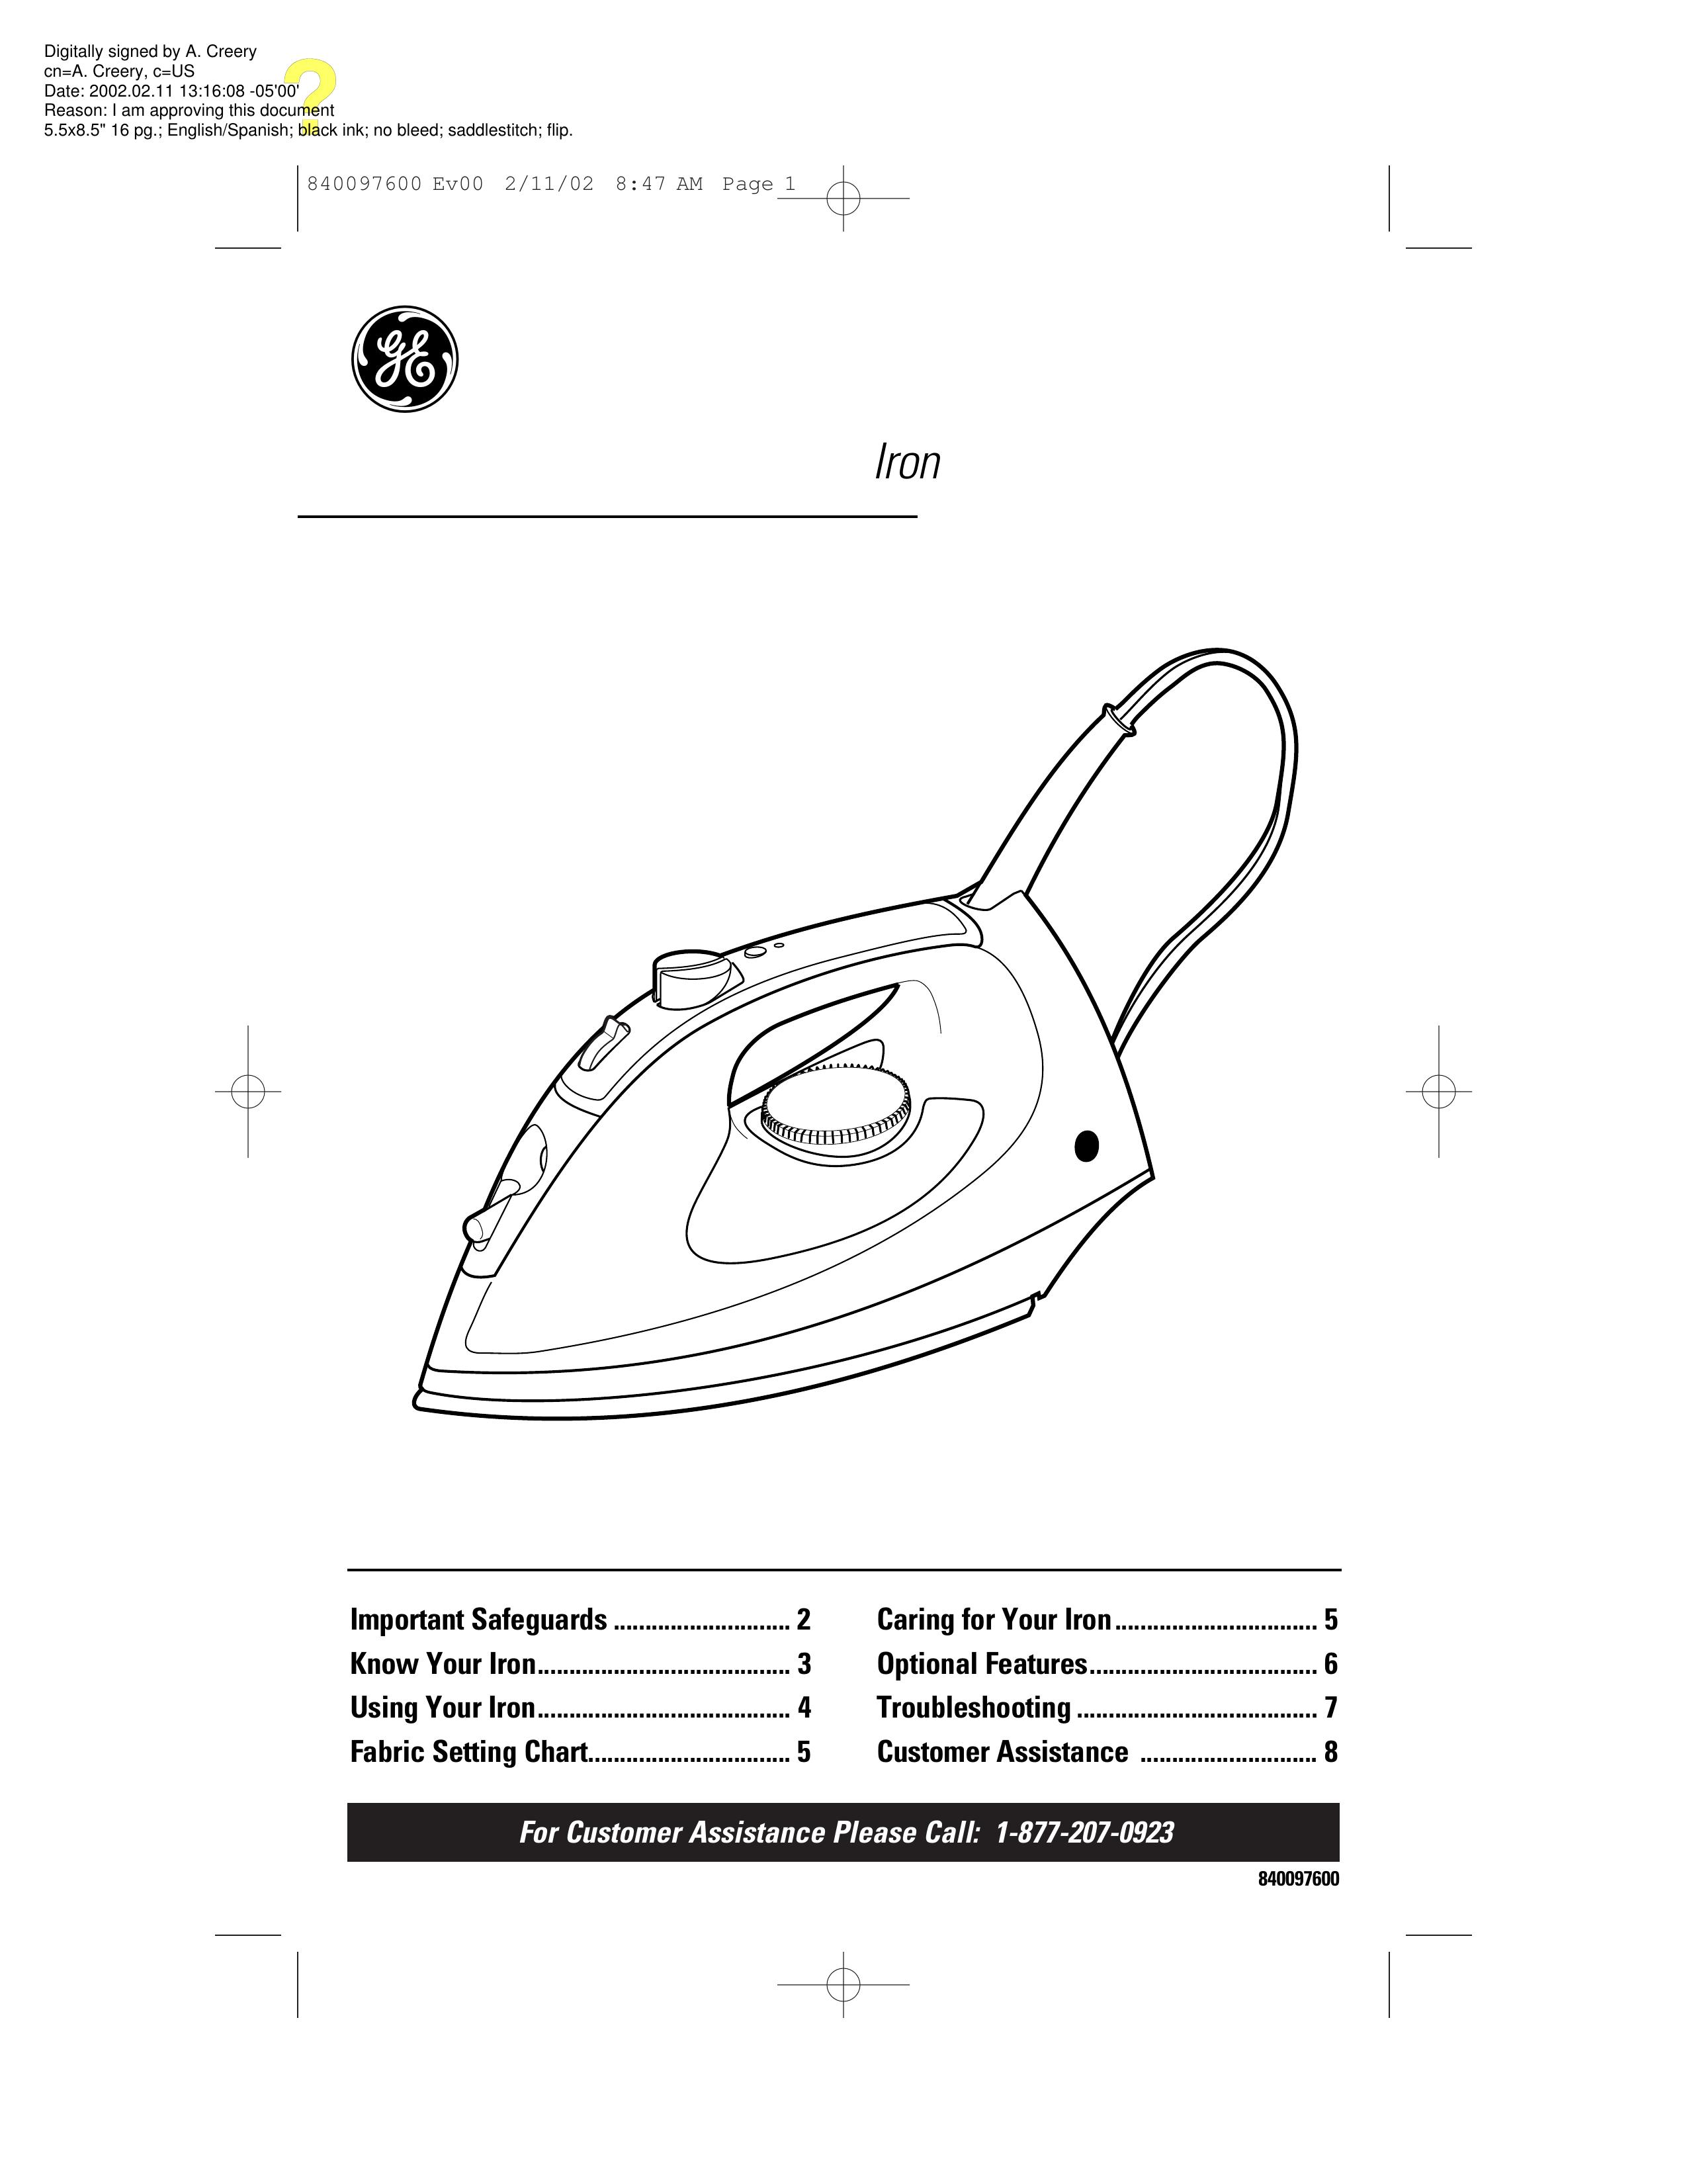 GE 840097600 Iron User Manual